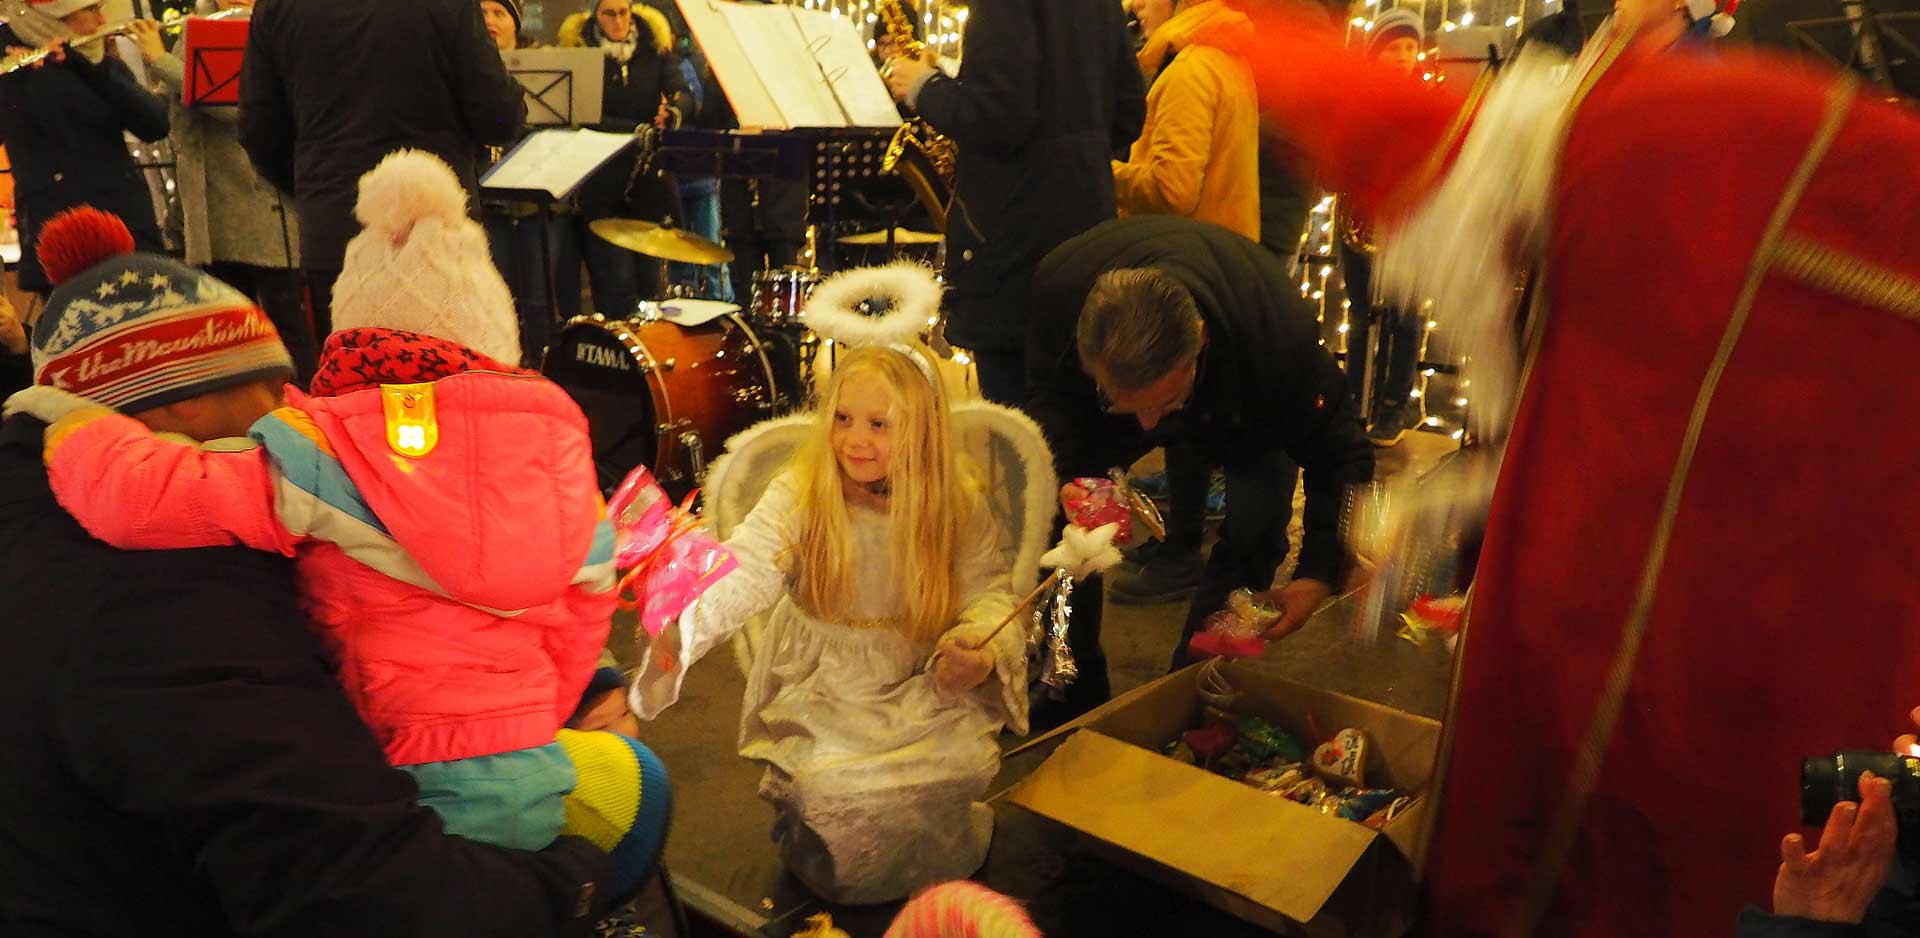 Weihnachtsengel Alina, der Heilige Nikolaus und Bürgermeister Hartmann verteilten kleine Geschenke an die Kinder (Foto: br-medienagentur)